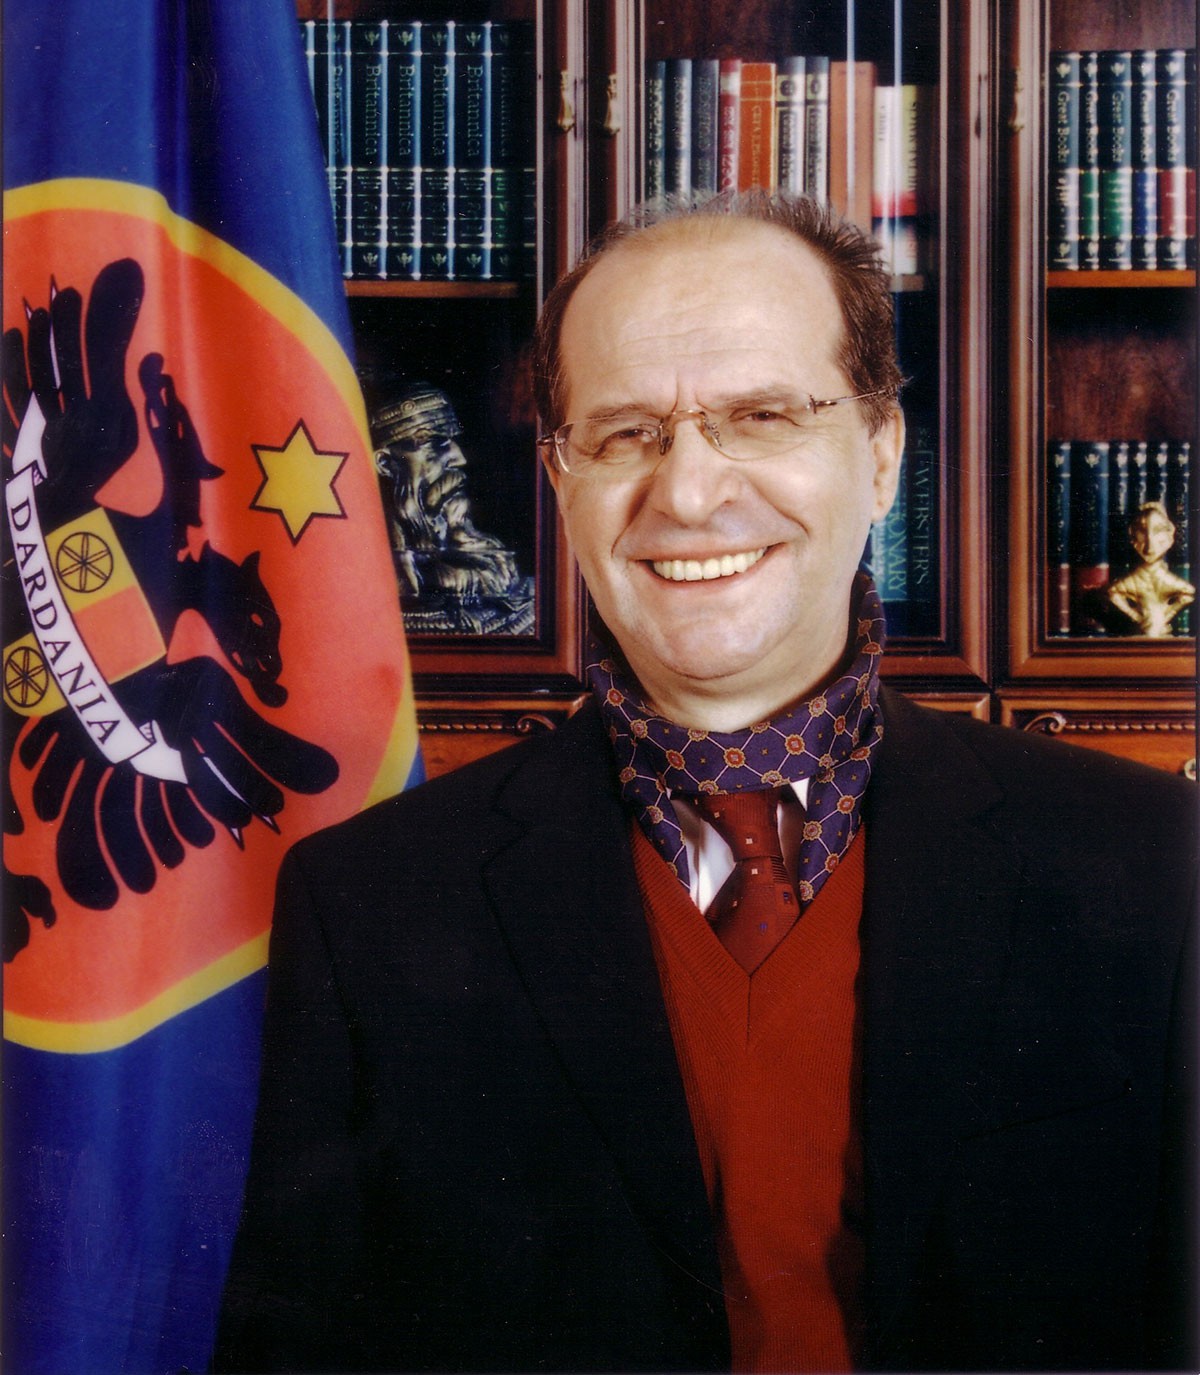 Official portrait, 2001